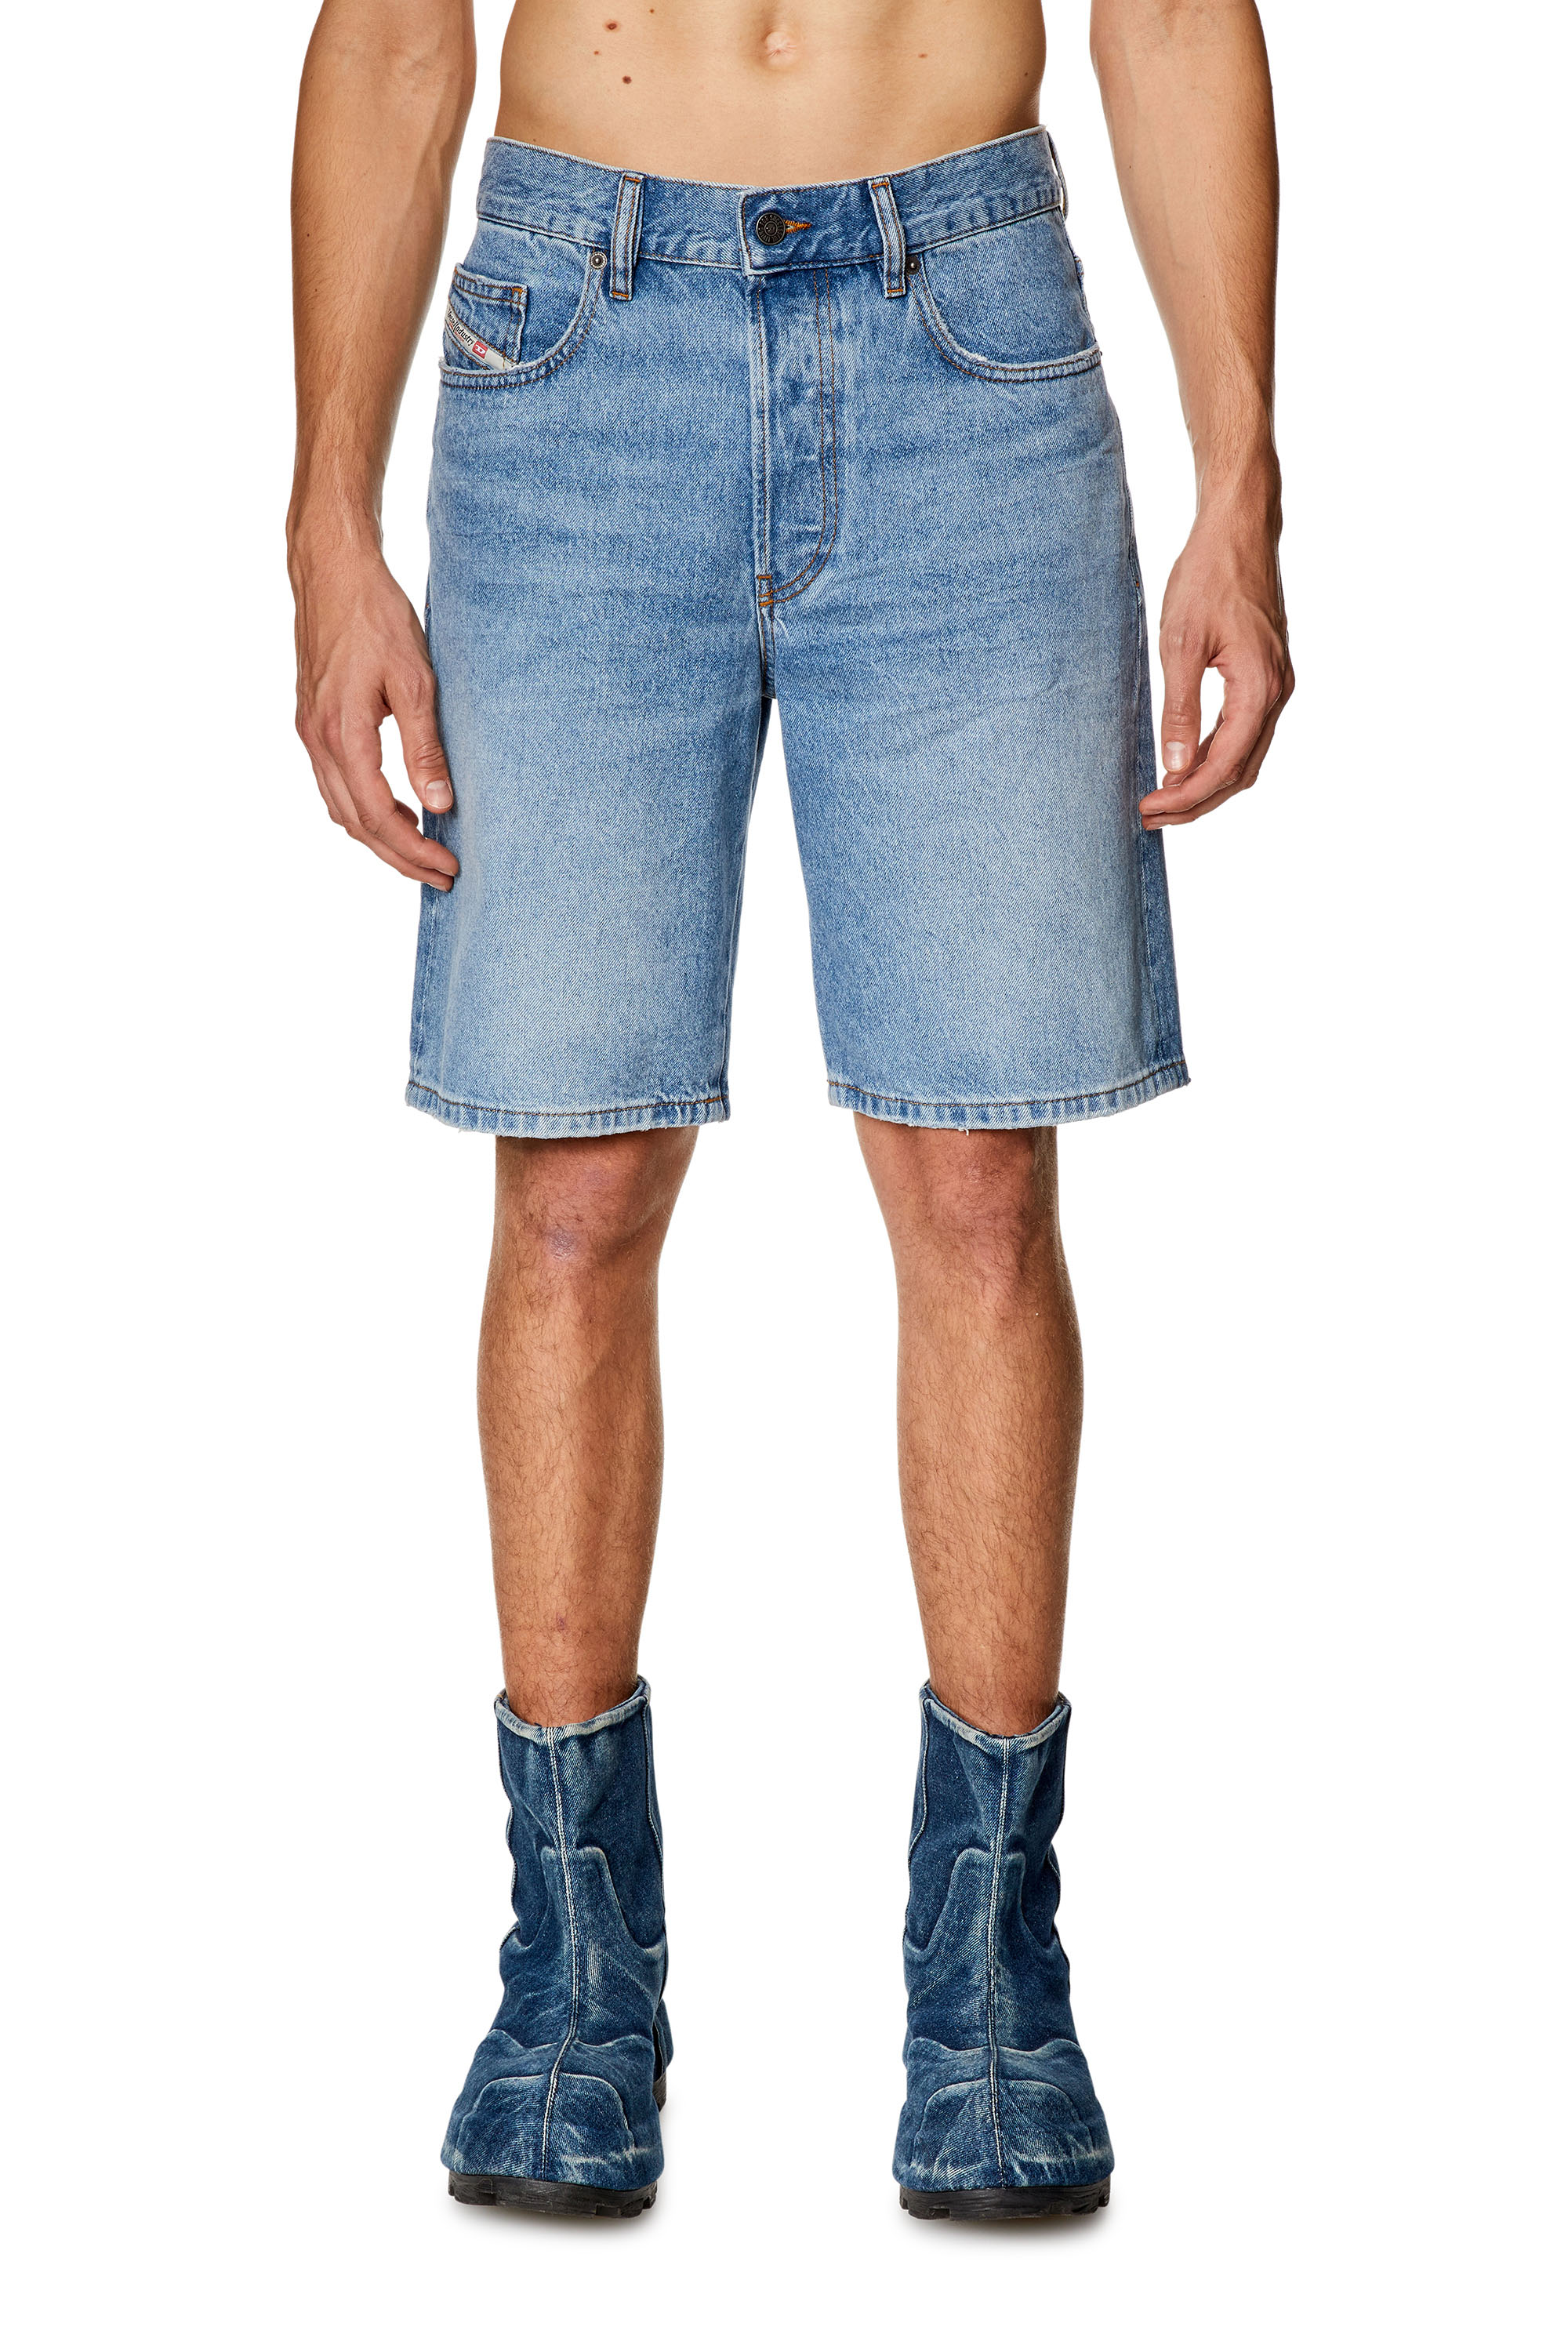 Diesel - Pantalones cortos en denim - Shorts - Hombre - Azul marino